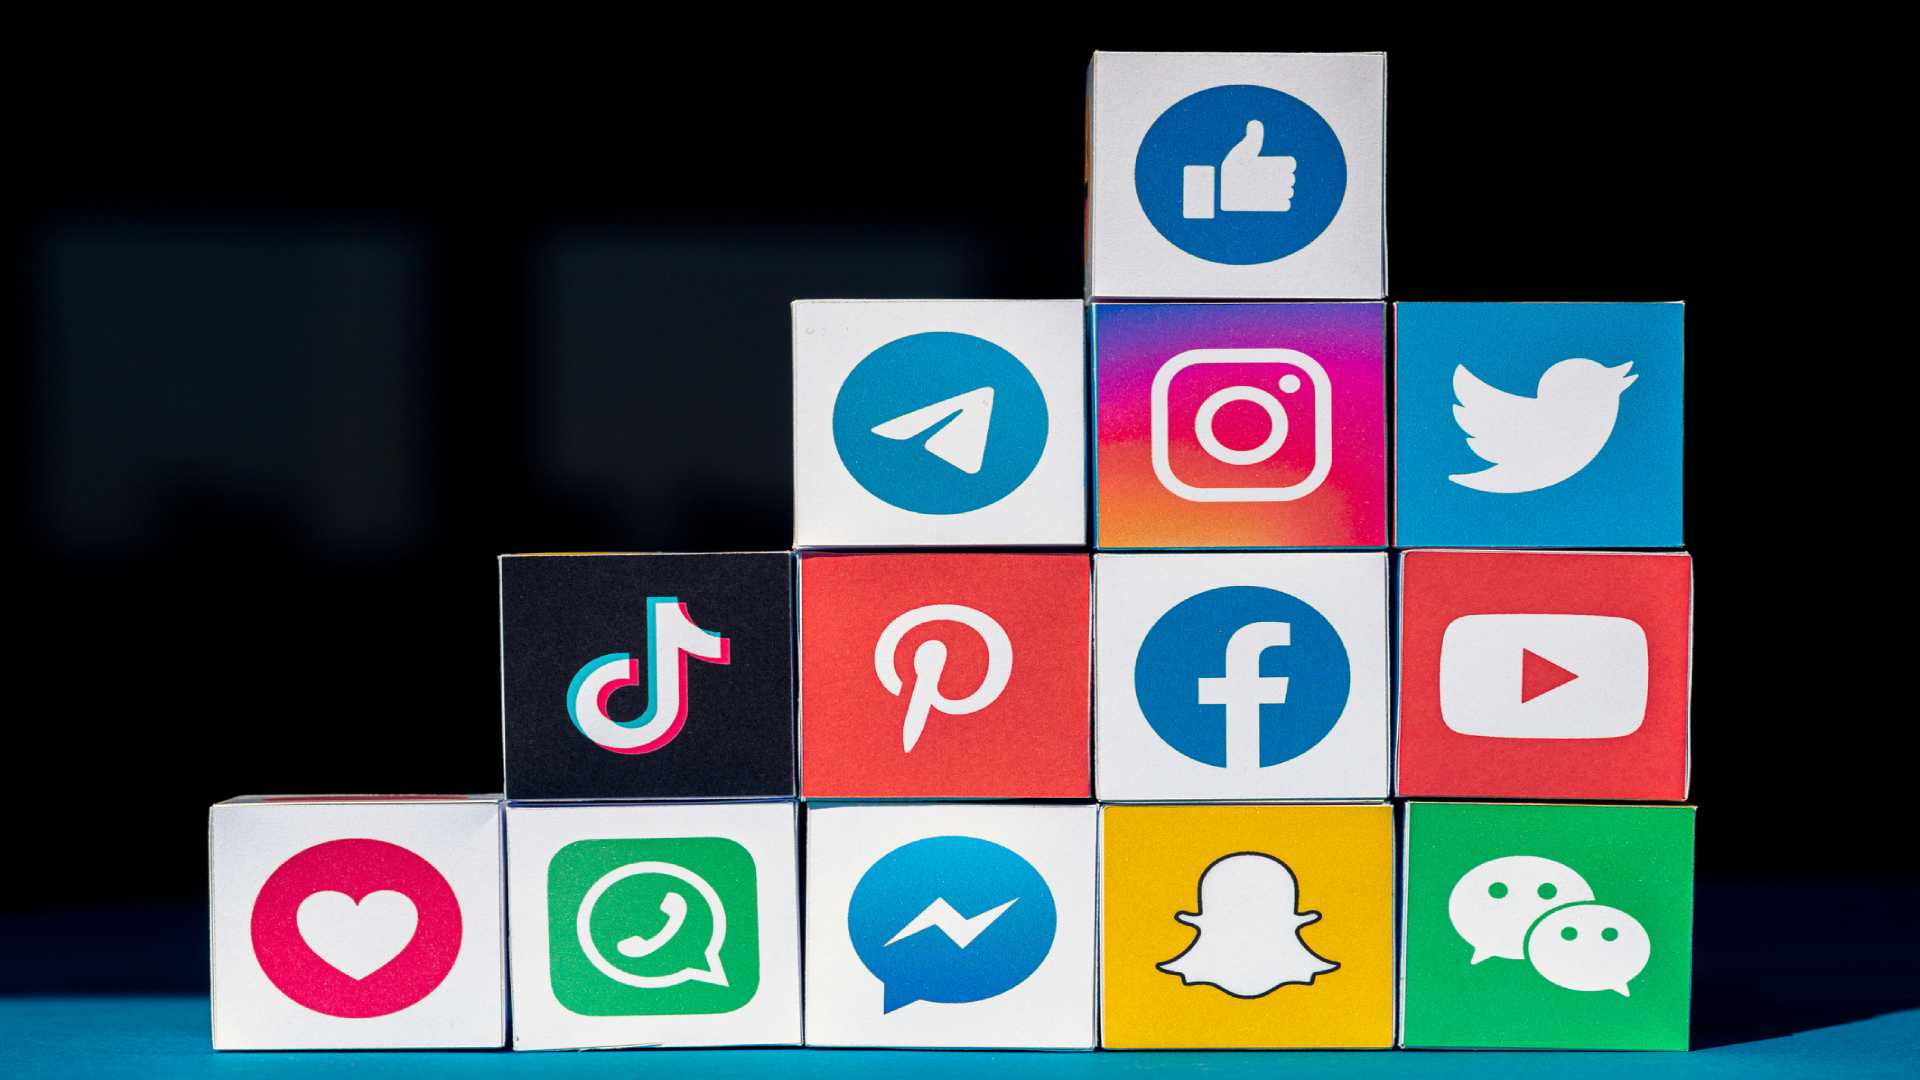 More social media icons at Divi footer